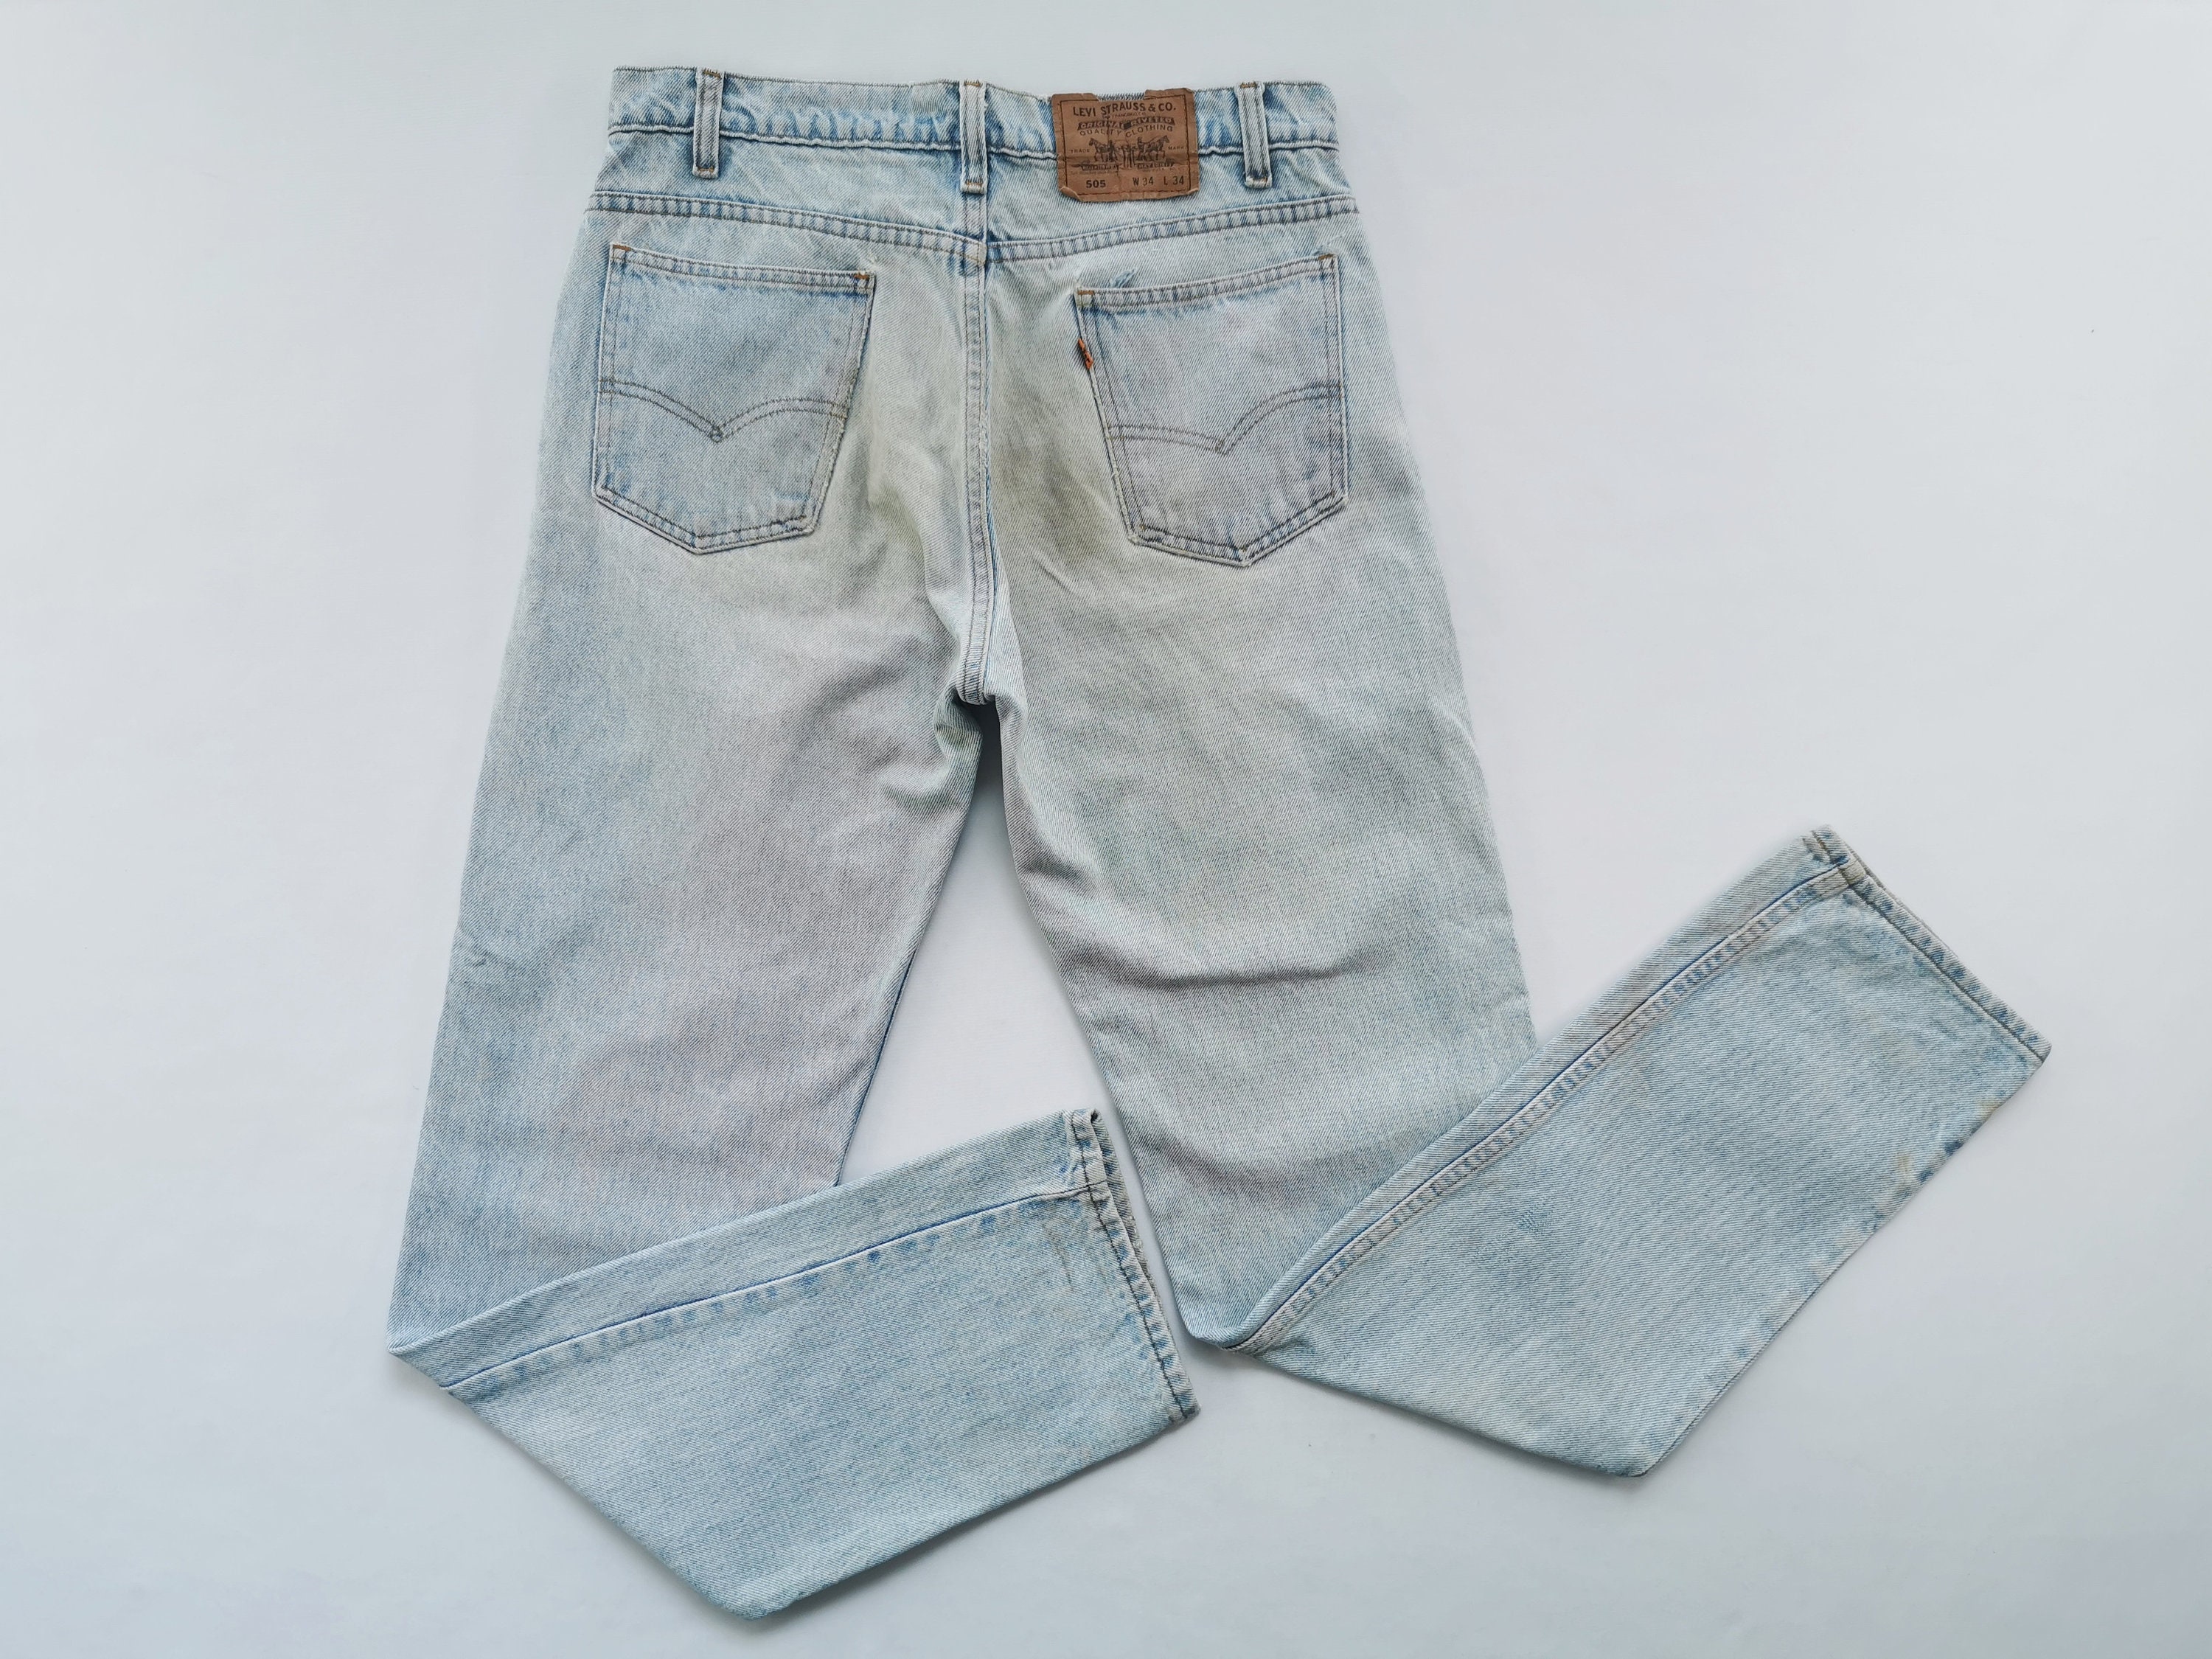 Levis 505 Jeans Distressed Vintage Size 34 Levis 505 Denim - Etsy Canada